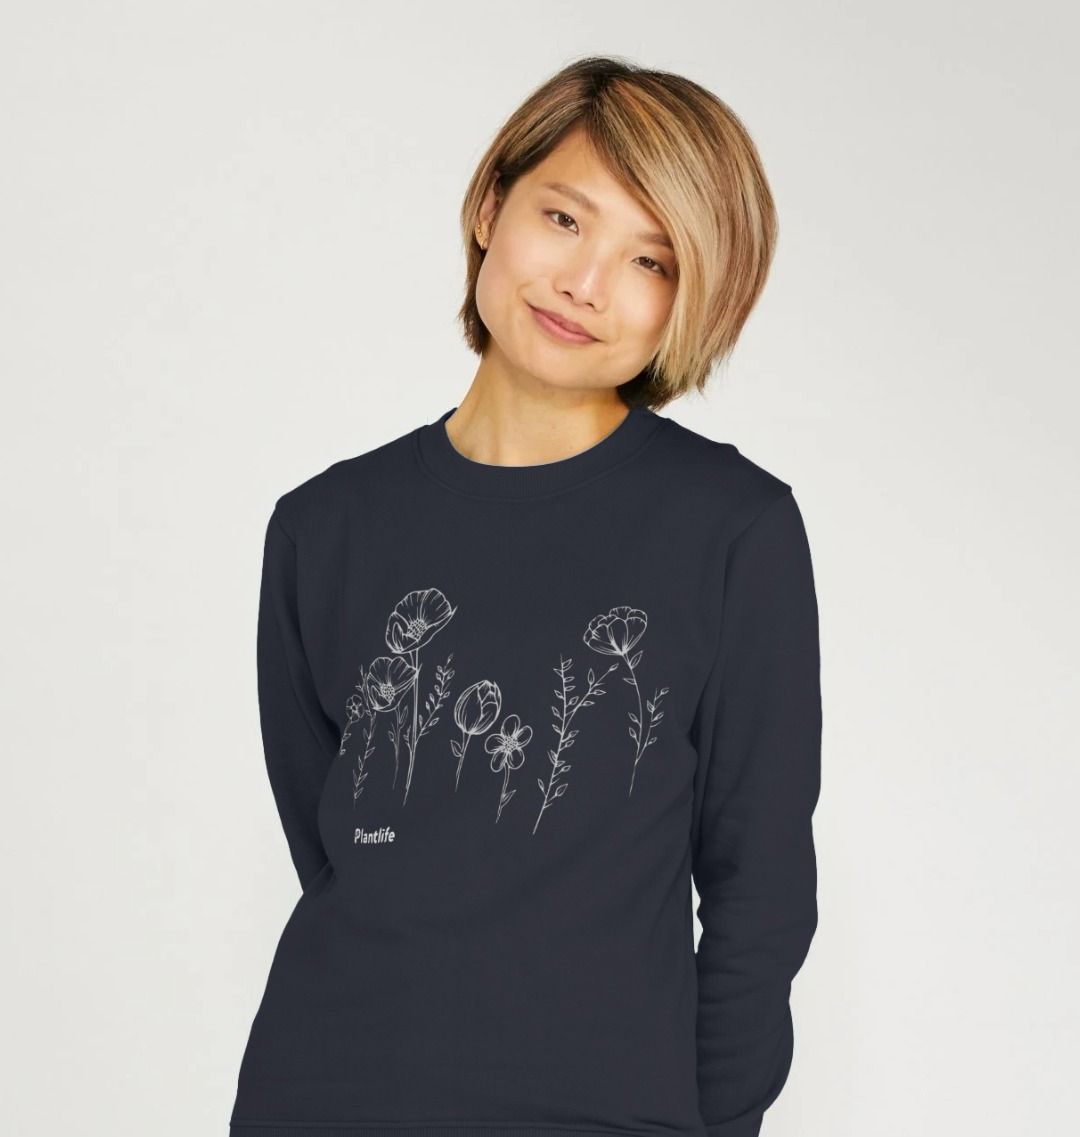 Women's Floral Sweatshirt